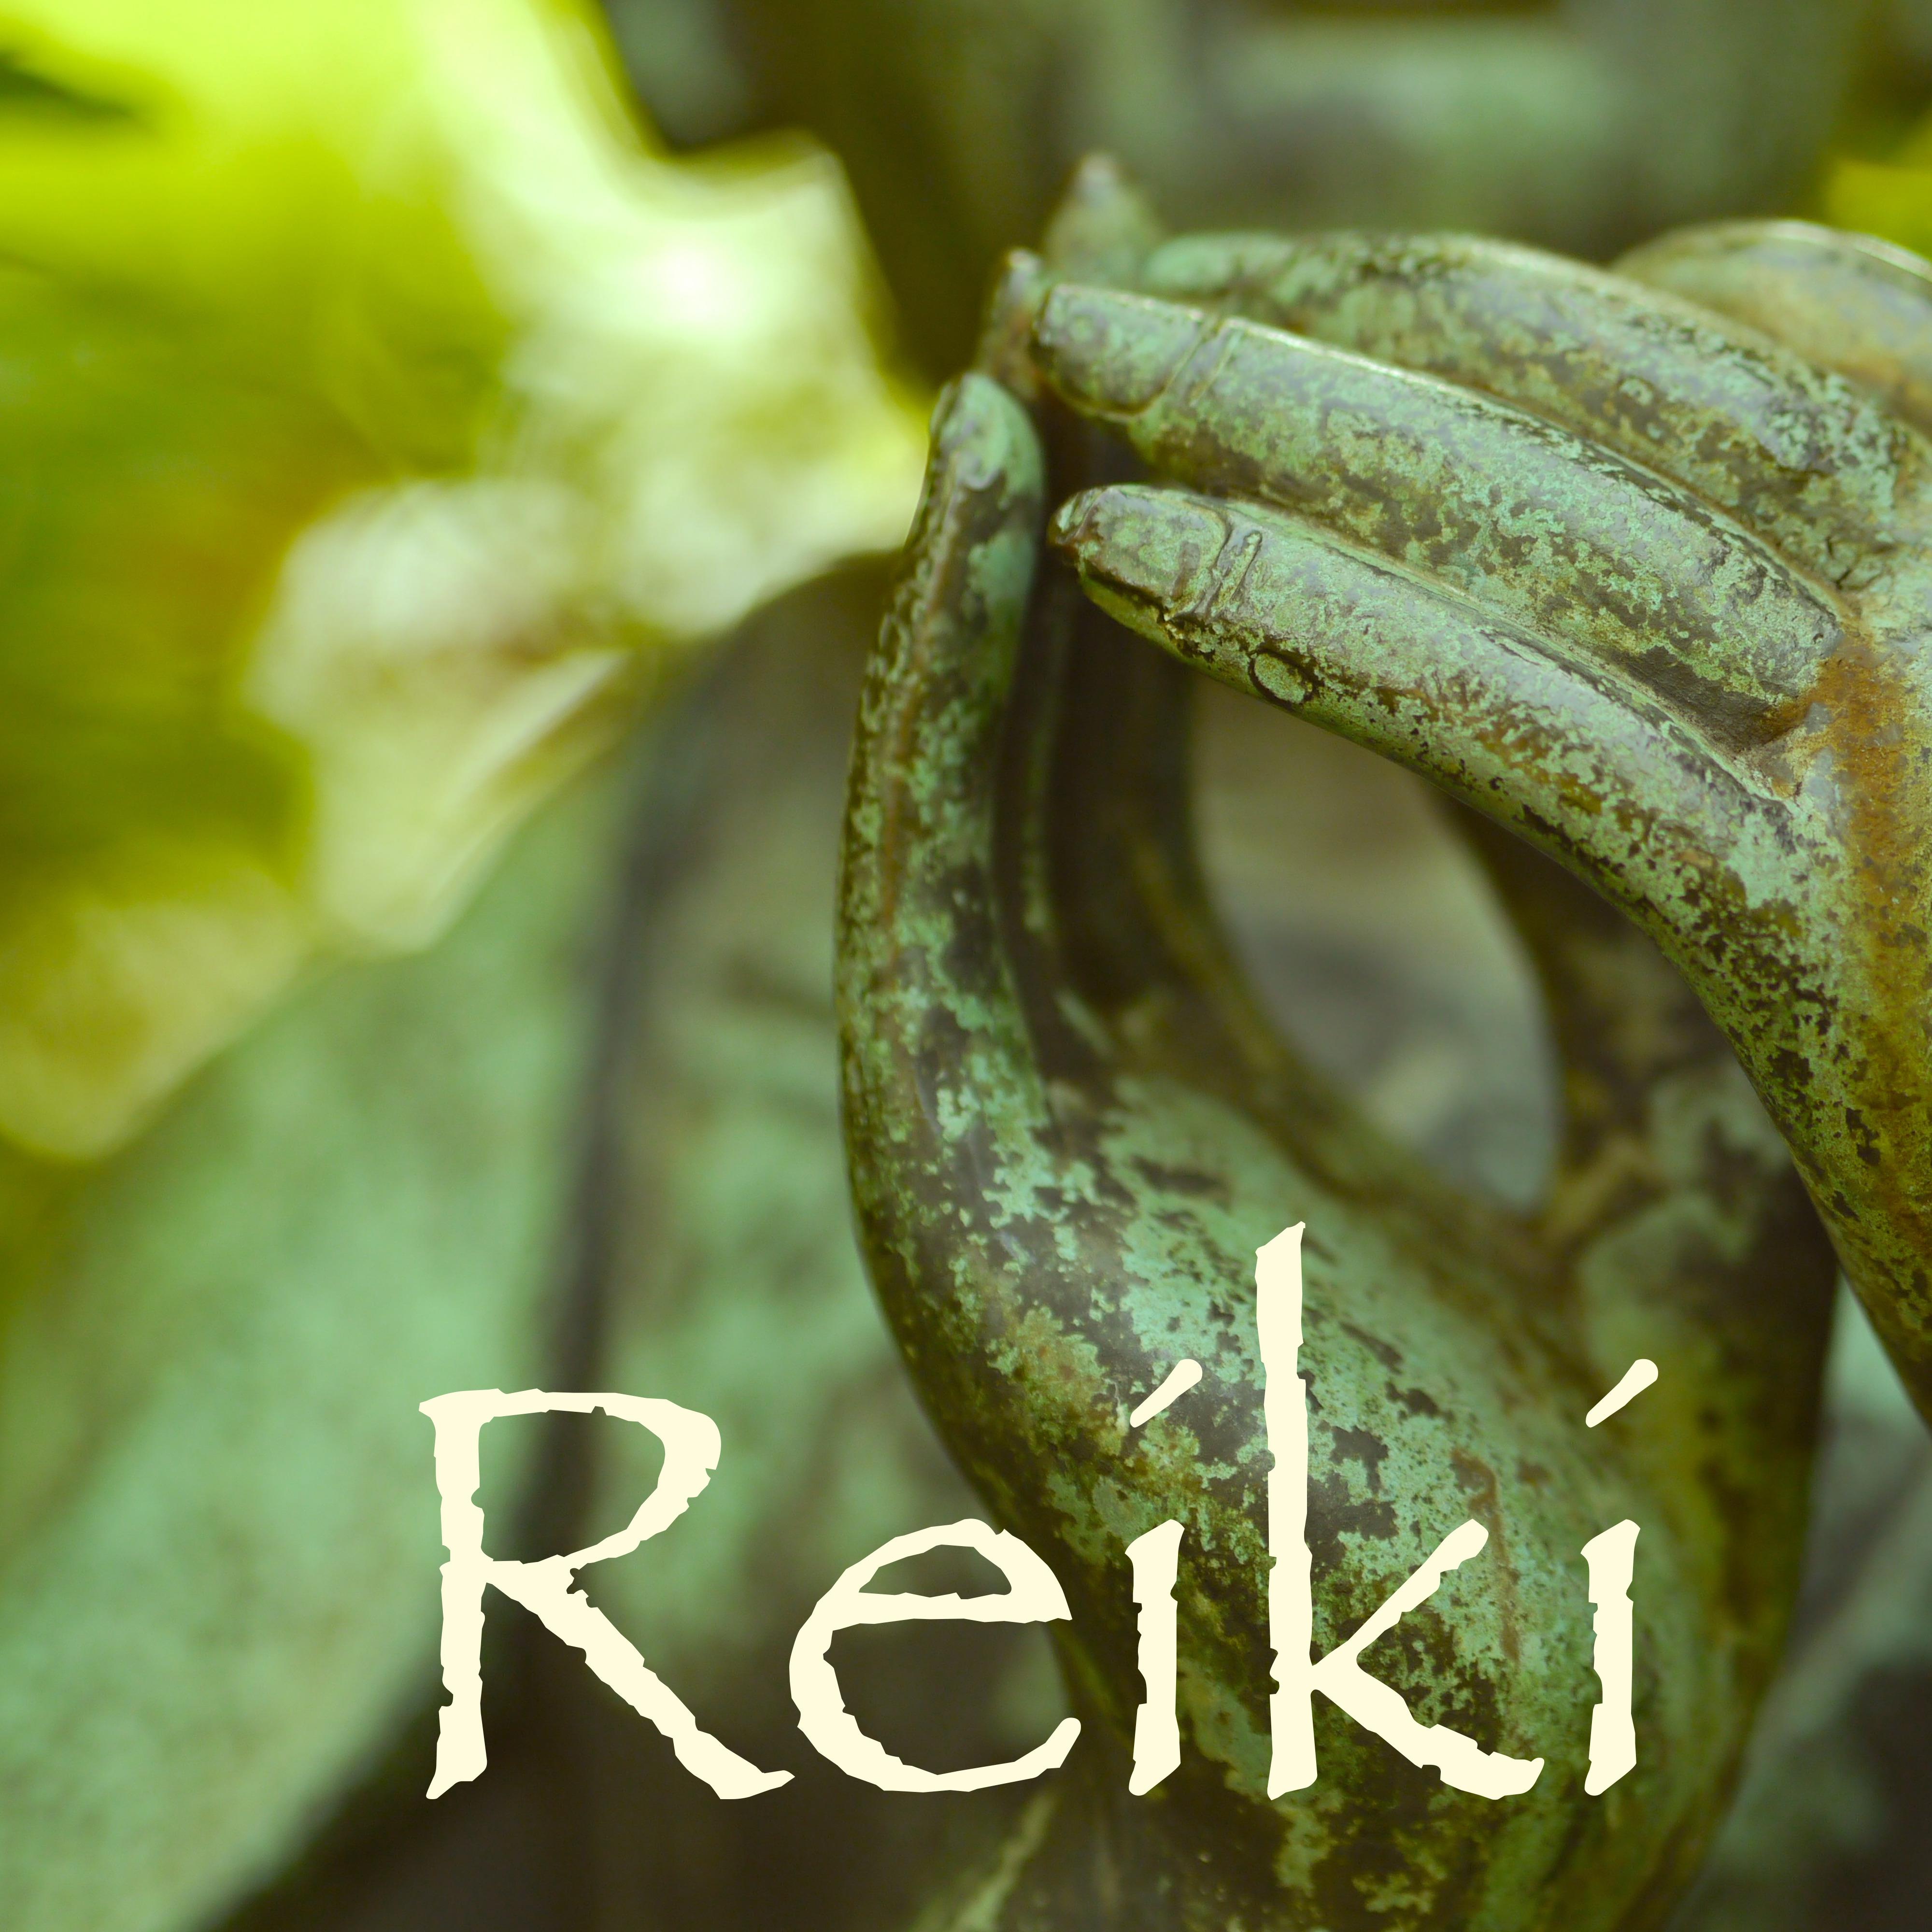 Reiki: Mu sica de Meditacio n para Relajacio n Mental  Saludo al Sol Yoga, Aprender a Meditar y Dormir Bien